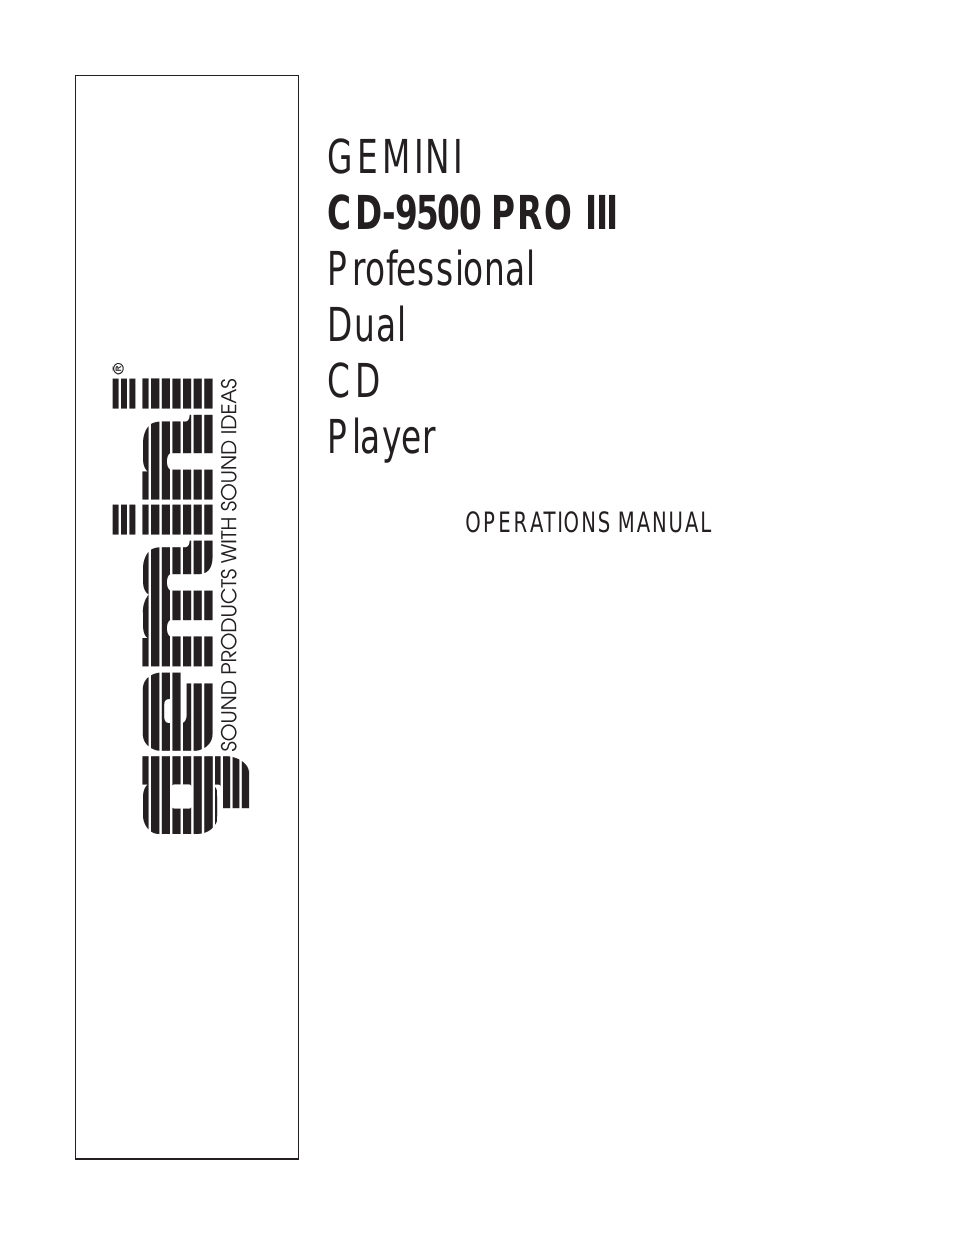 CD-9500 Pro III